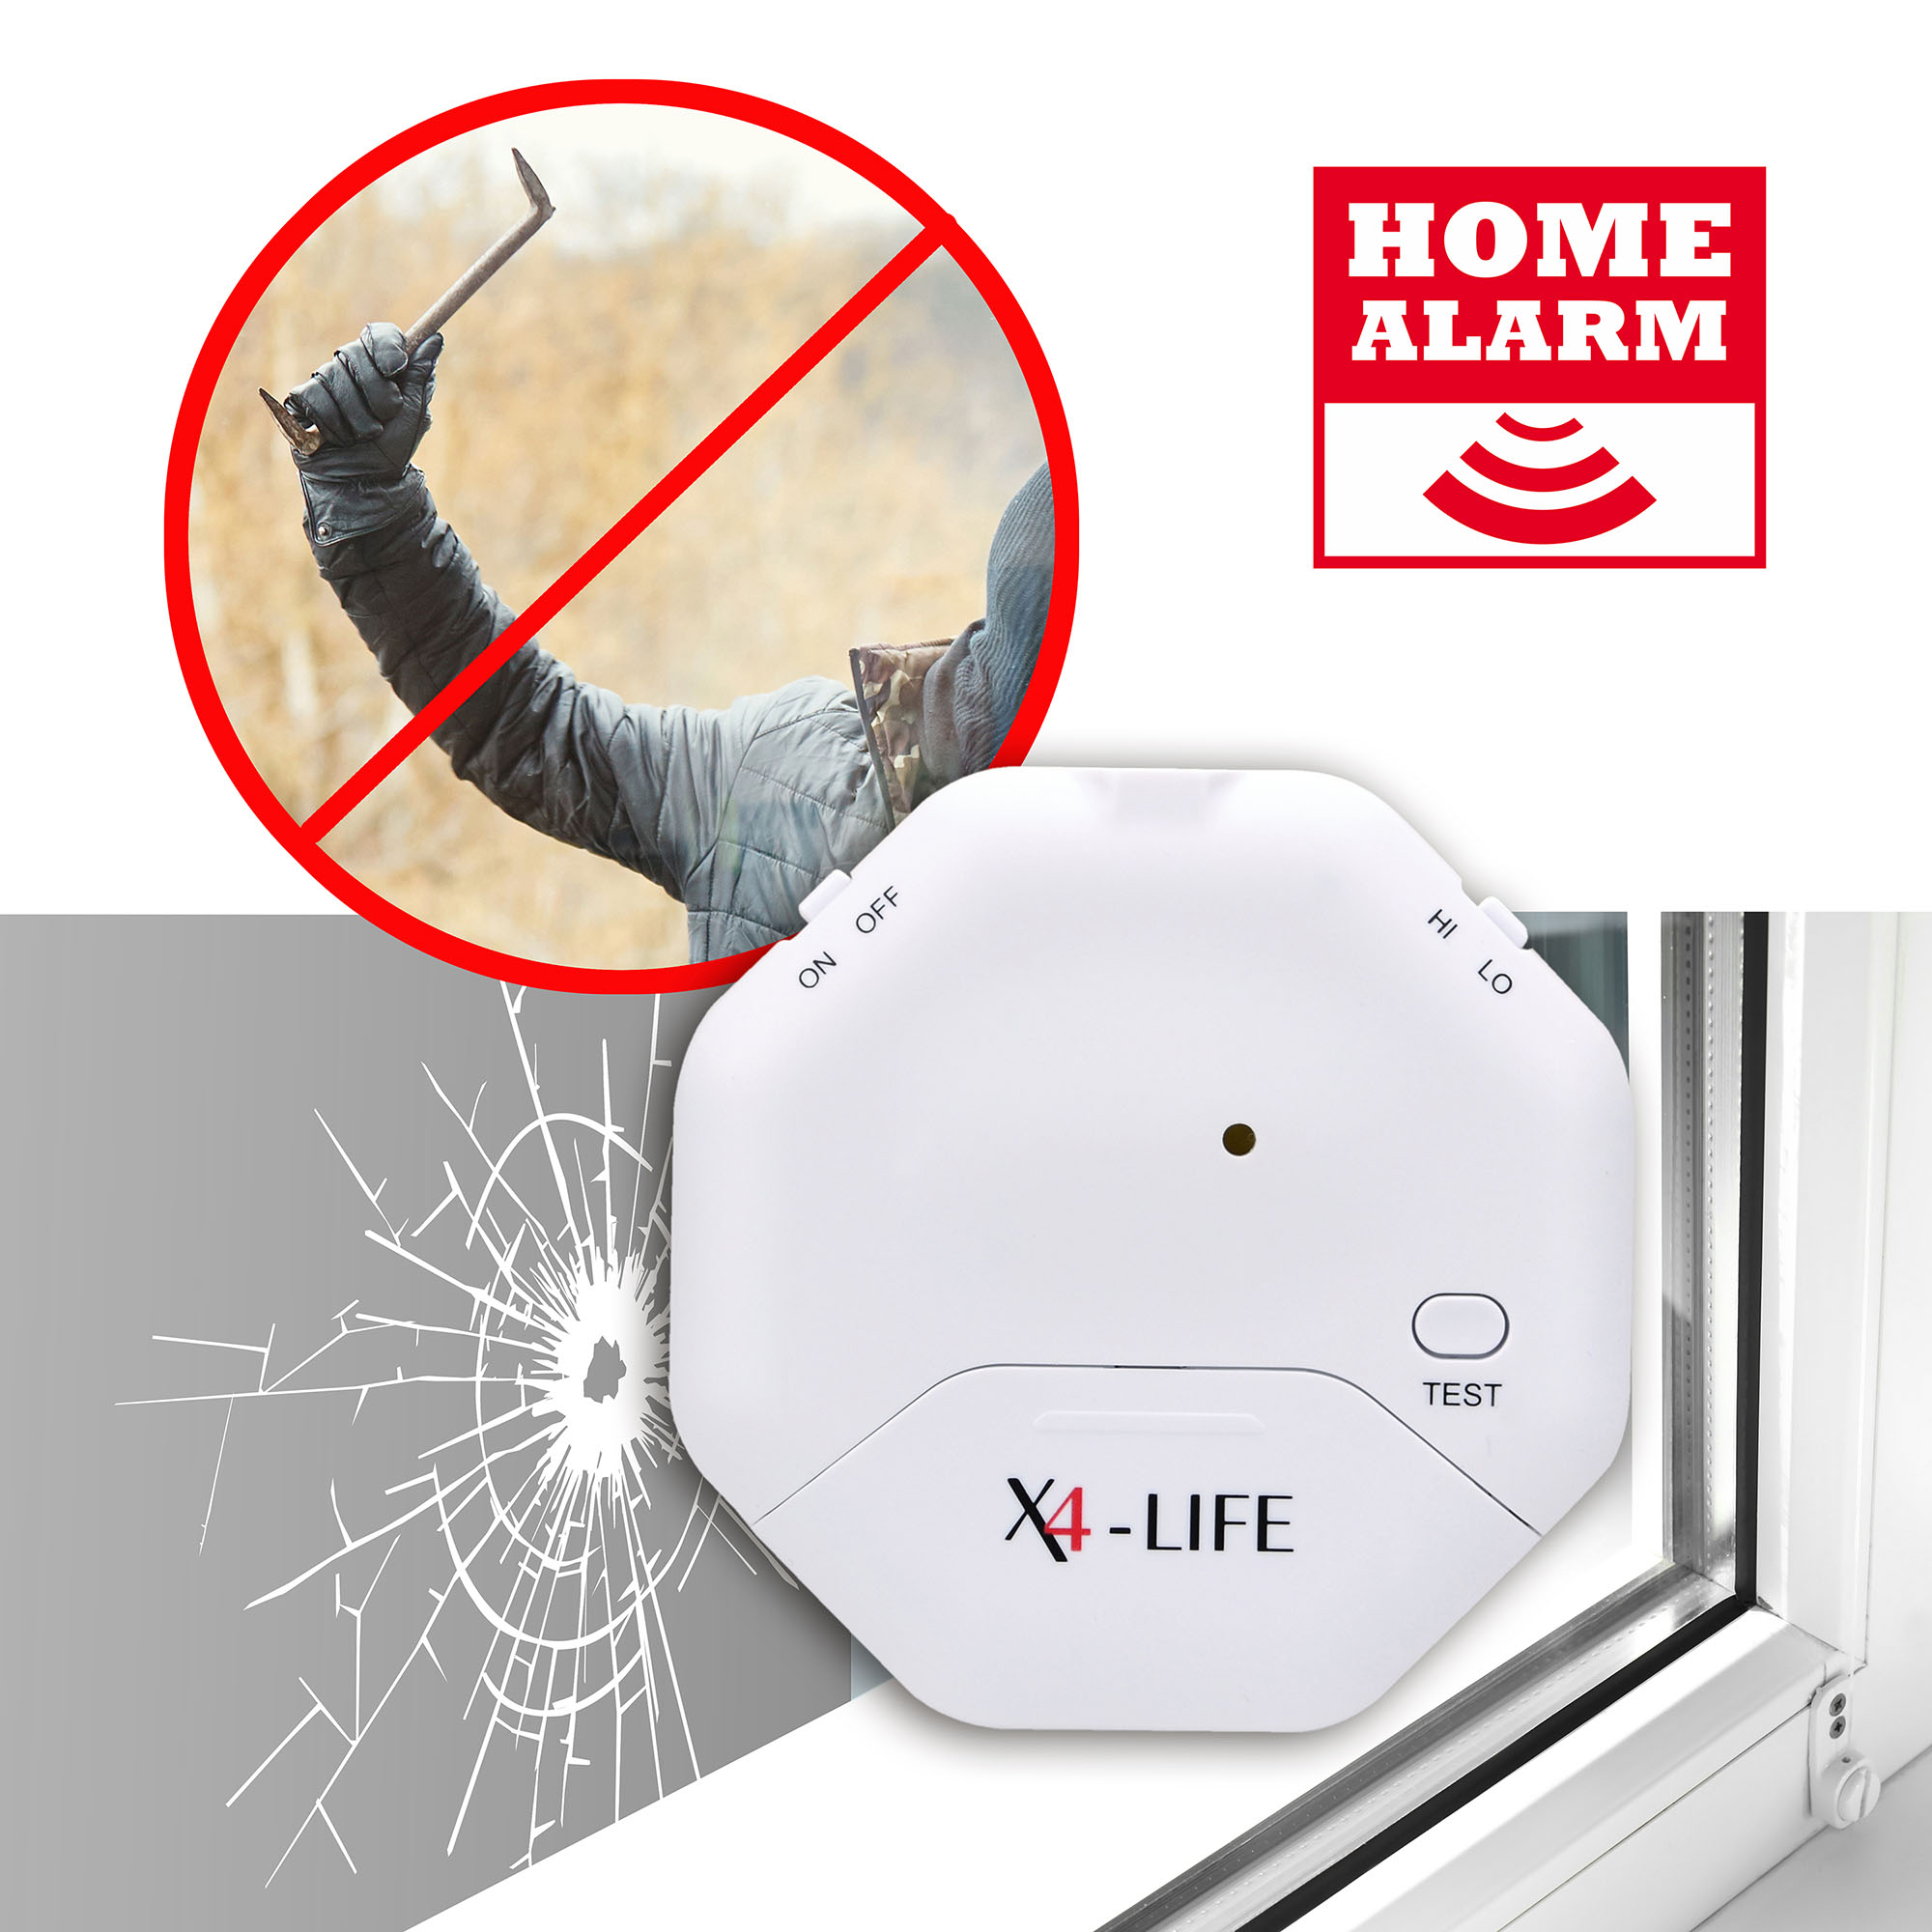 10er-Set X4-LIFE Security Glasbruch- und Öffnungs-Alarm Einbruch Abwehr